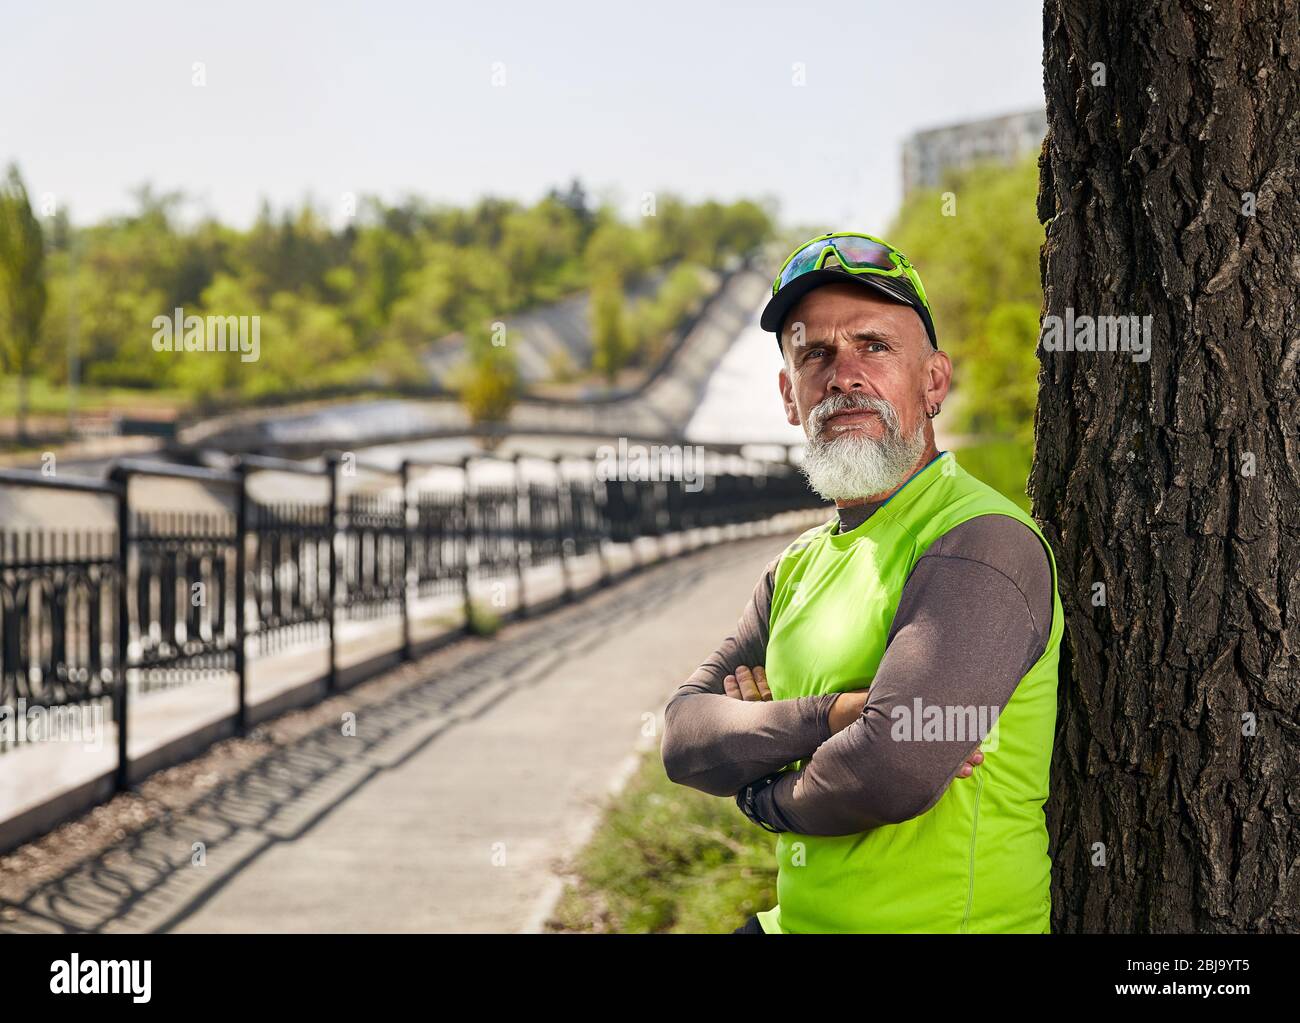 Portrait d'un homme âgé avec barbe grise au City Park le matin. Concept de vie sain Banque D'Images